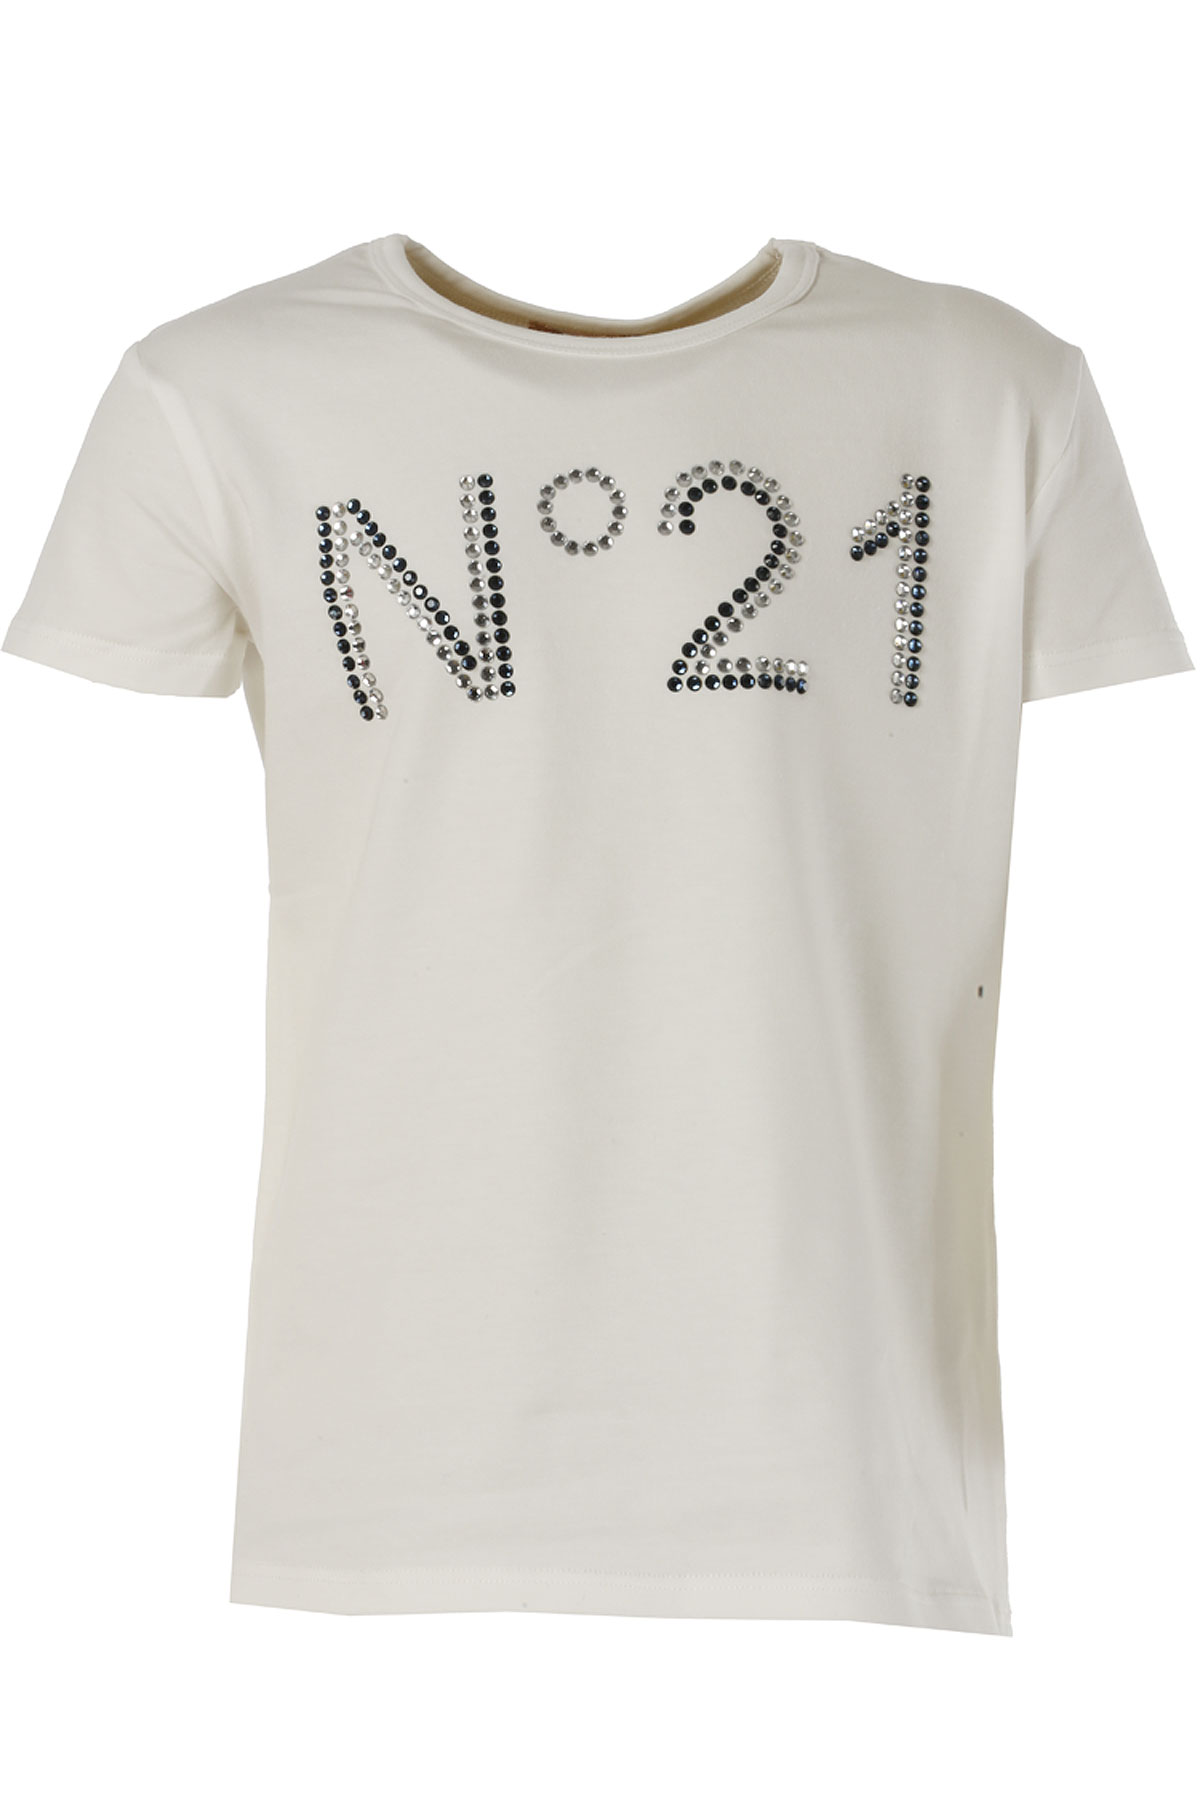 NO 21 Kinder T-Shirt für Mädchen Günstig im Outlet Sale, Weiss, Baumwolle, 2017, 36 (9 Years) 38 (10 Years)